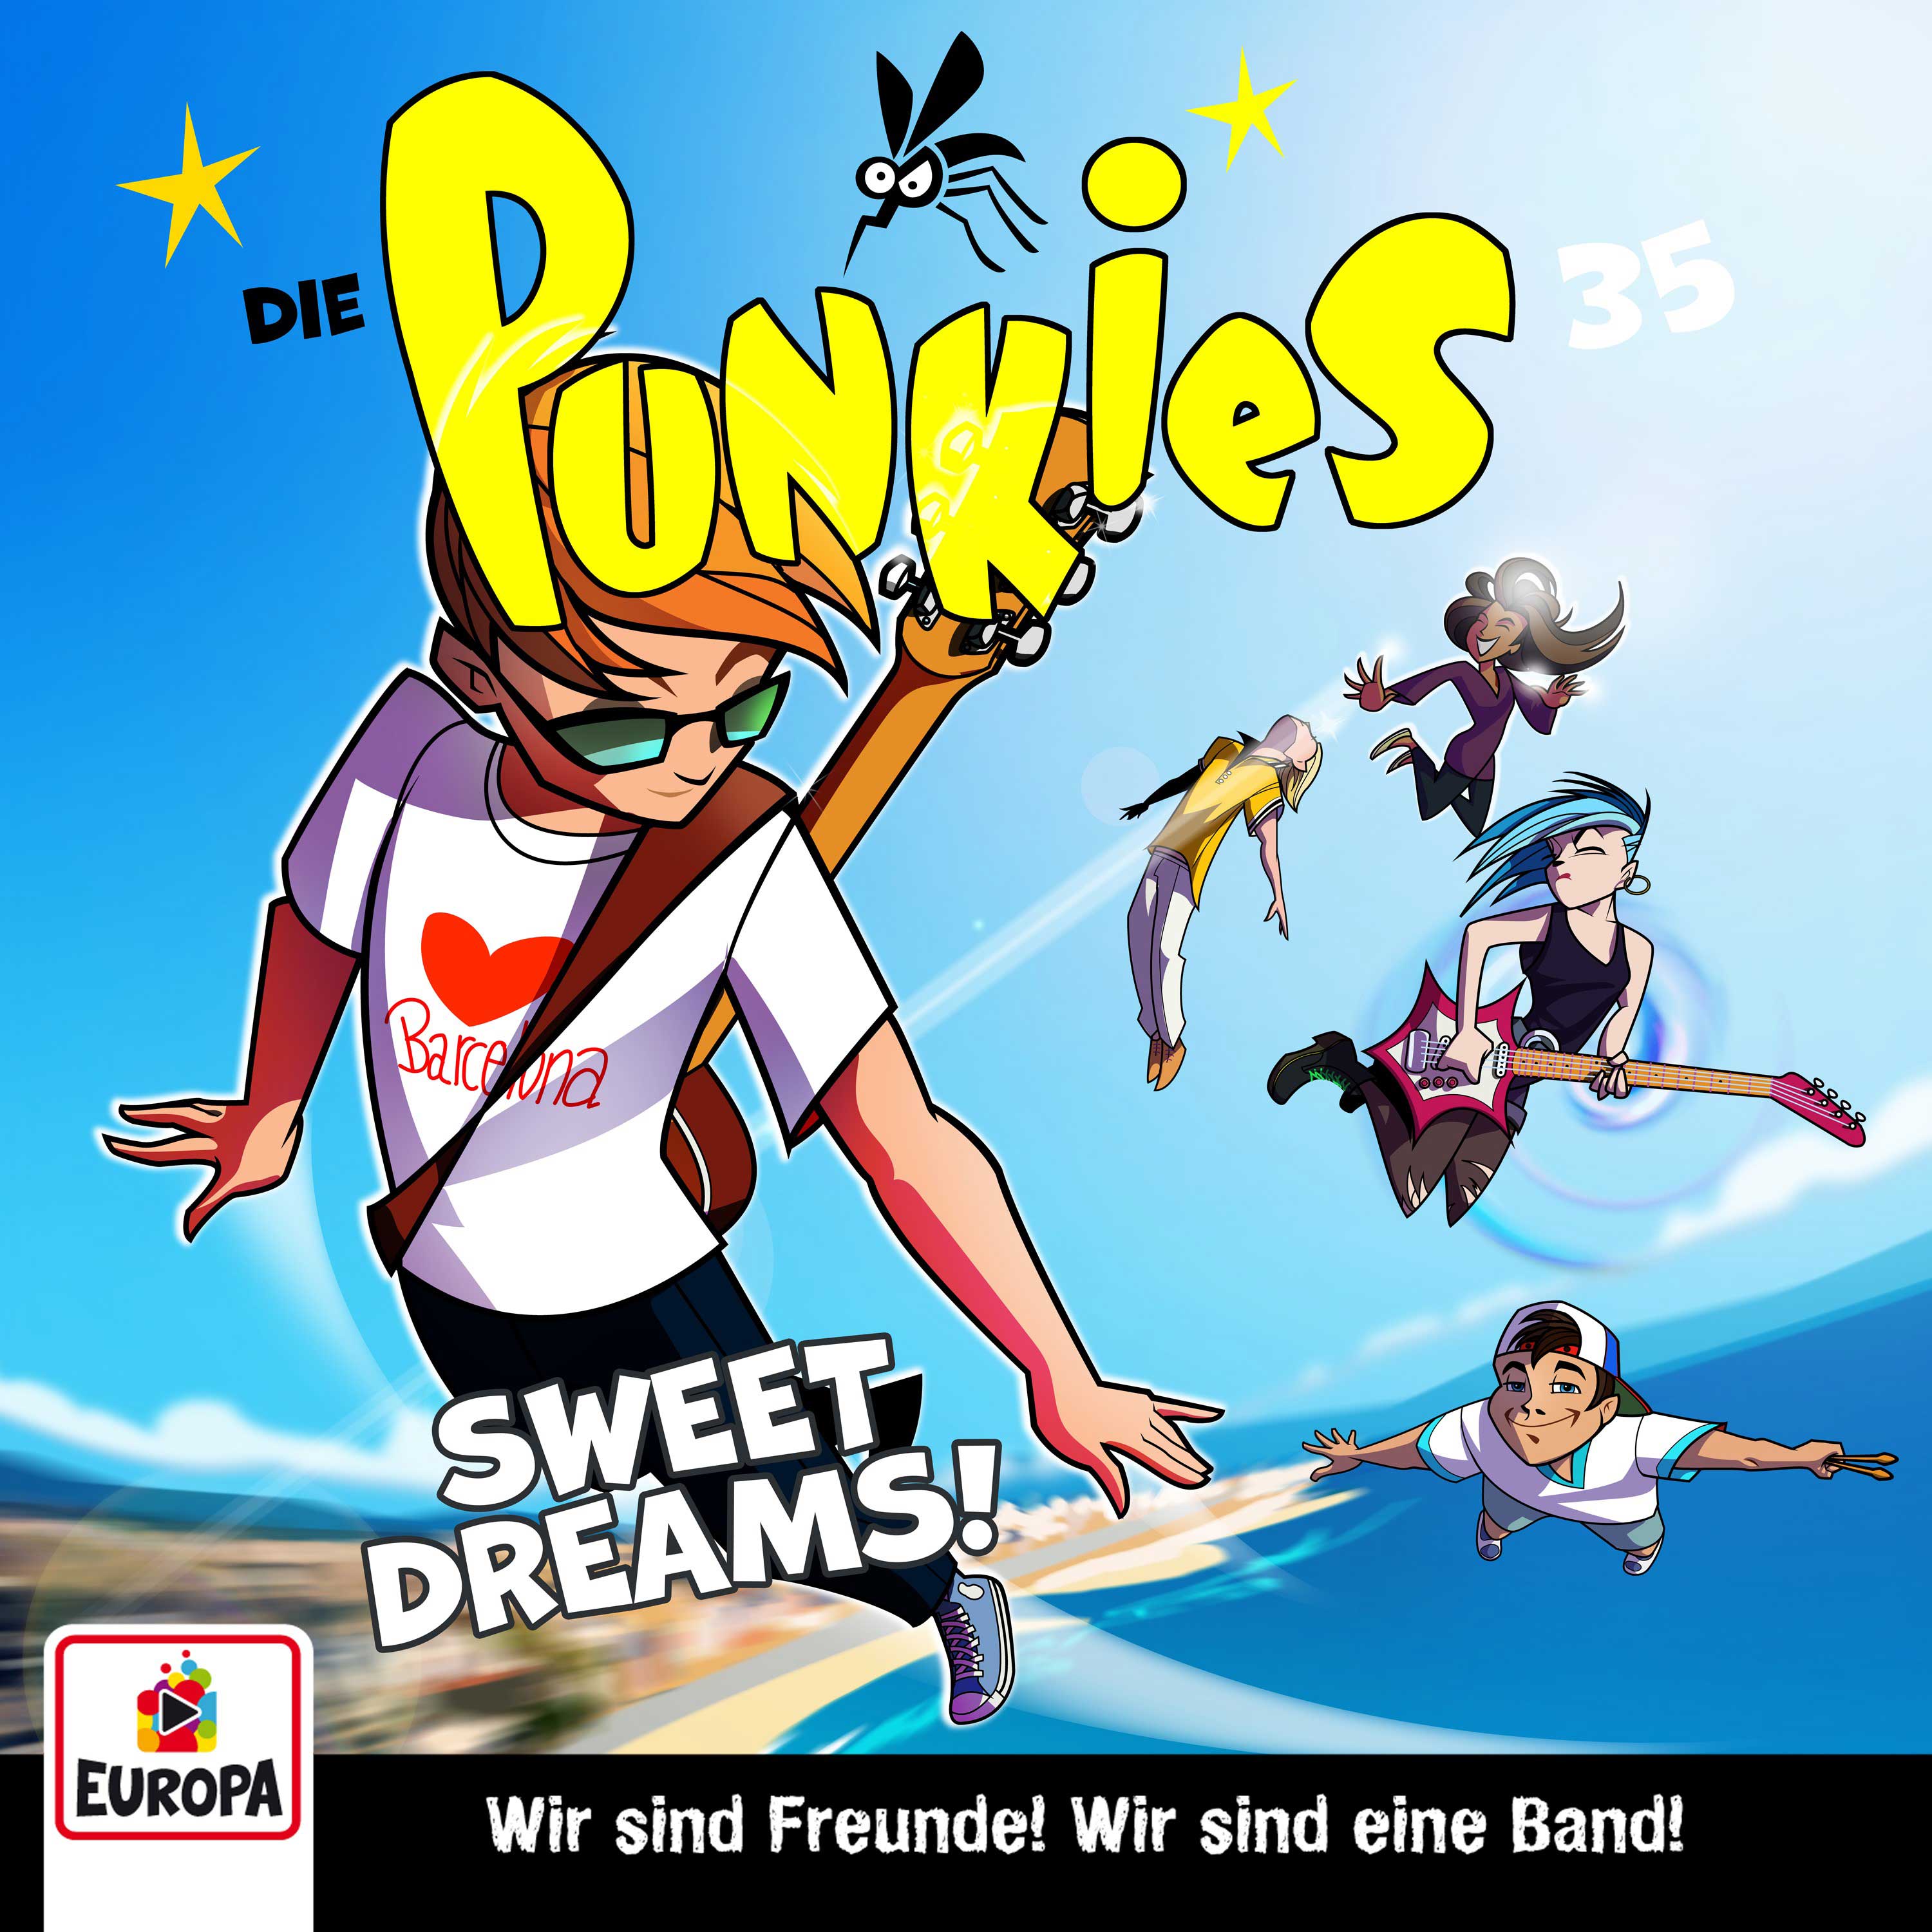 Die Punkies : Sweet Dreams!